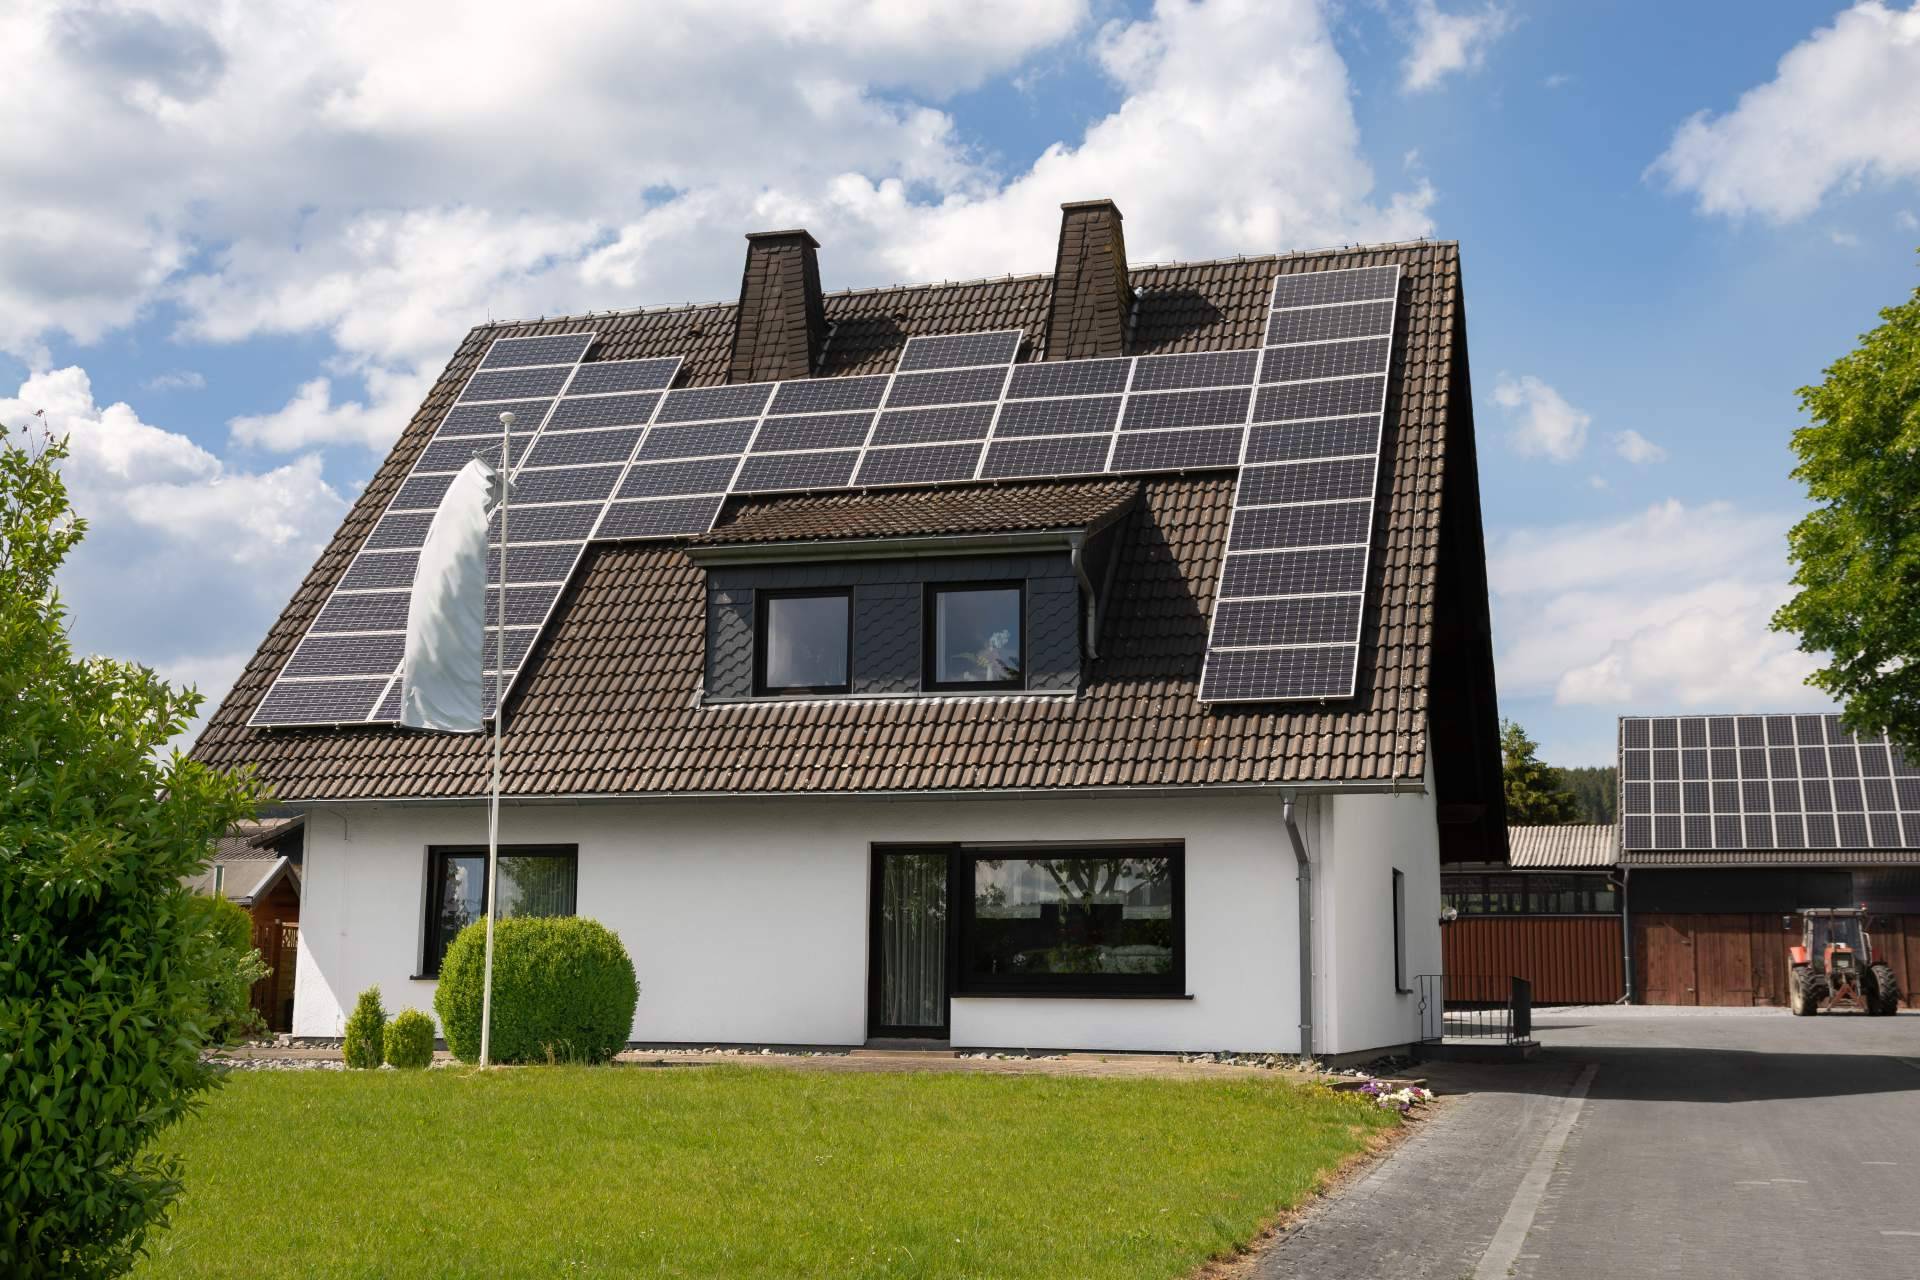 Las ventajas de instalar placas solares en casas unifamiliares